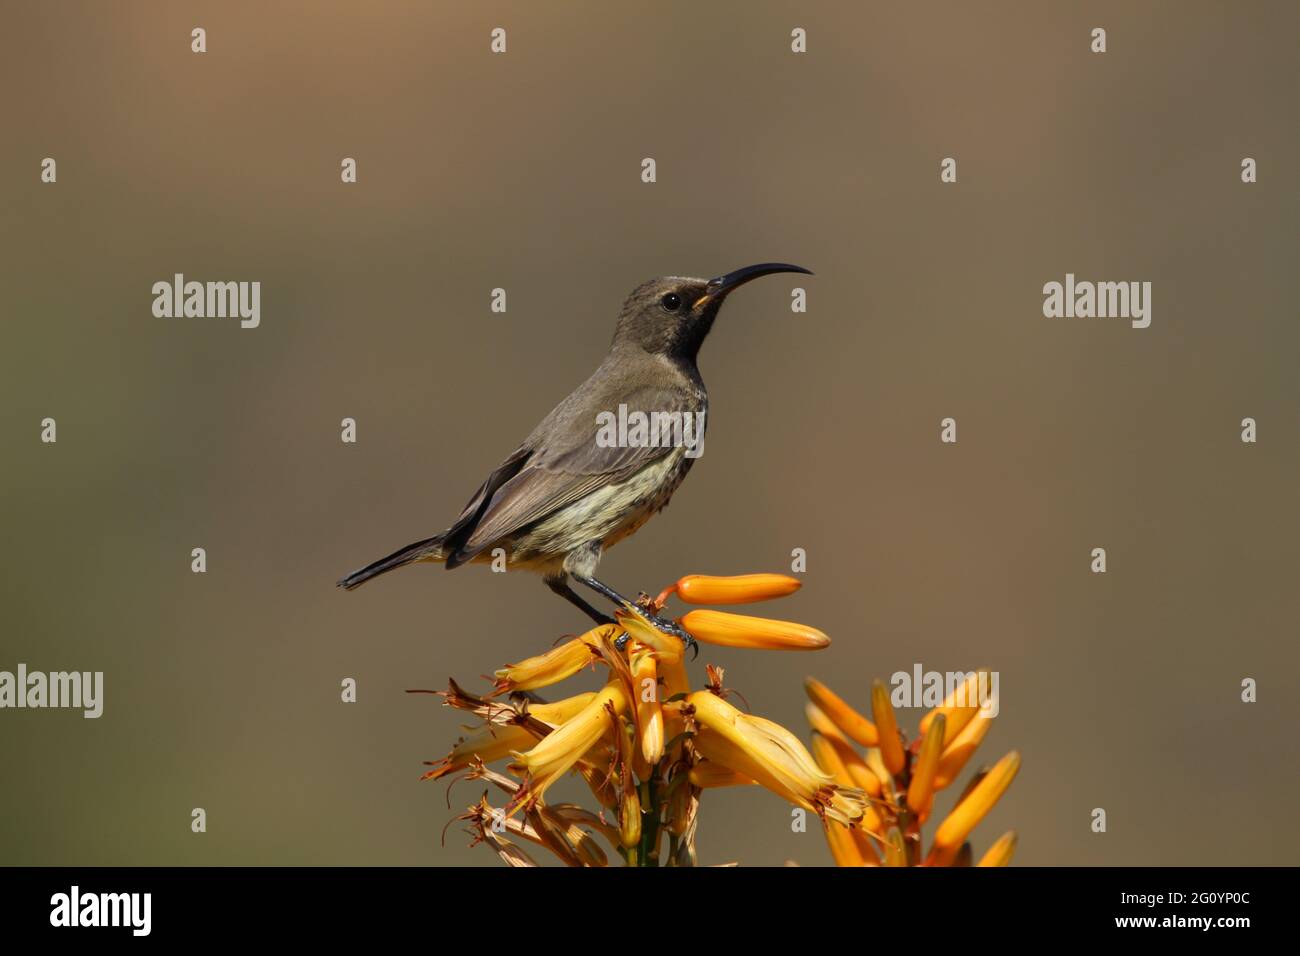 Amethyst-Sonnenvögel thronten auf einem Aloe-Blütenzweig. Stockfoto